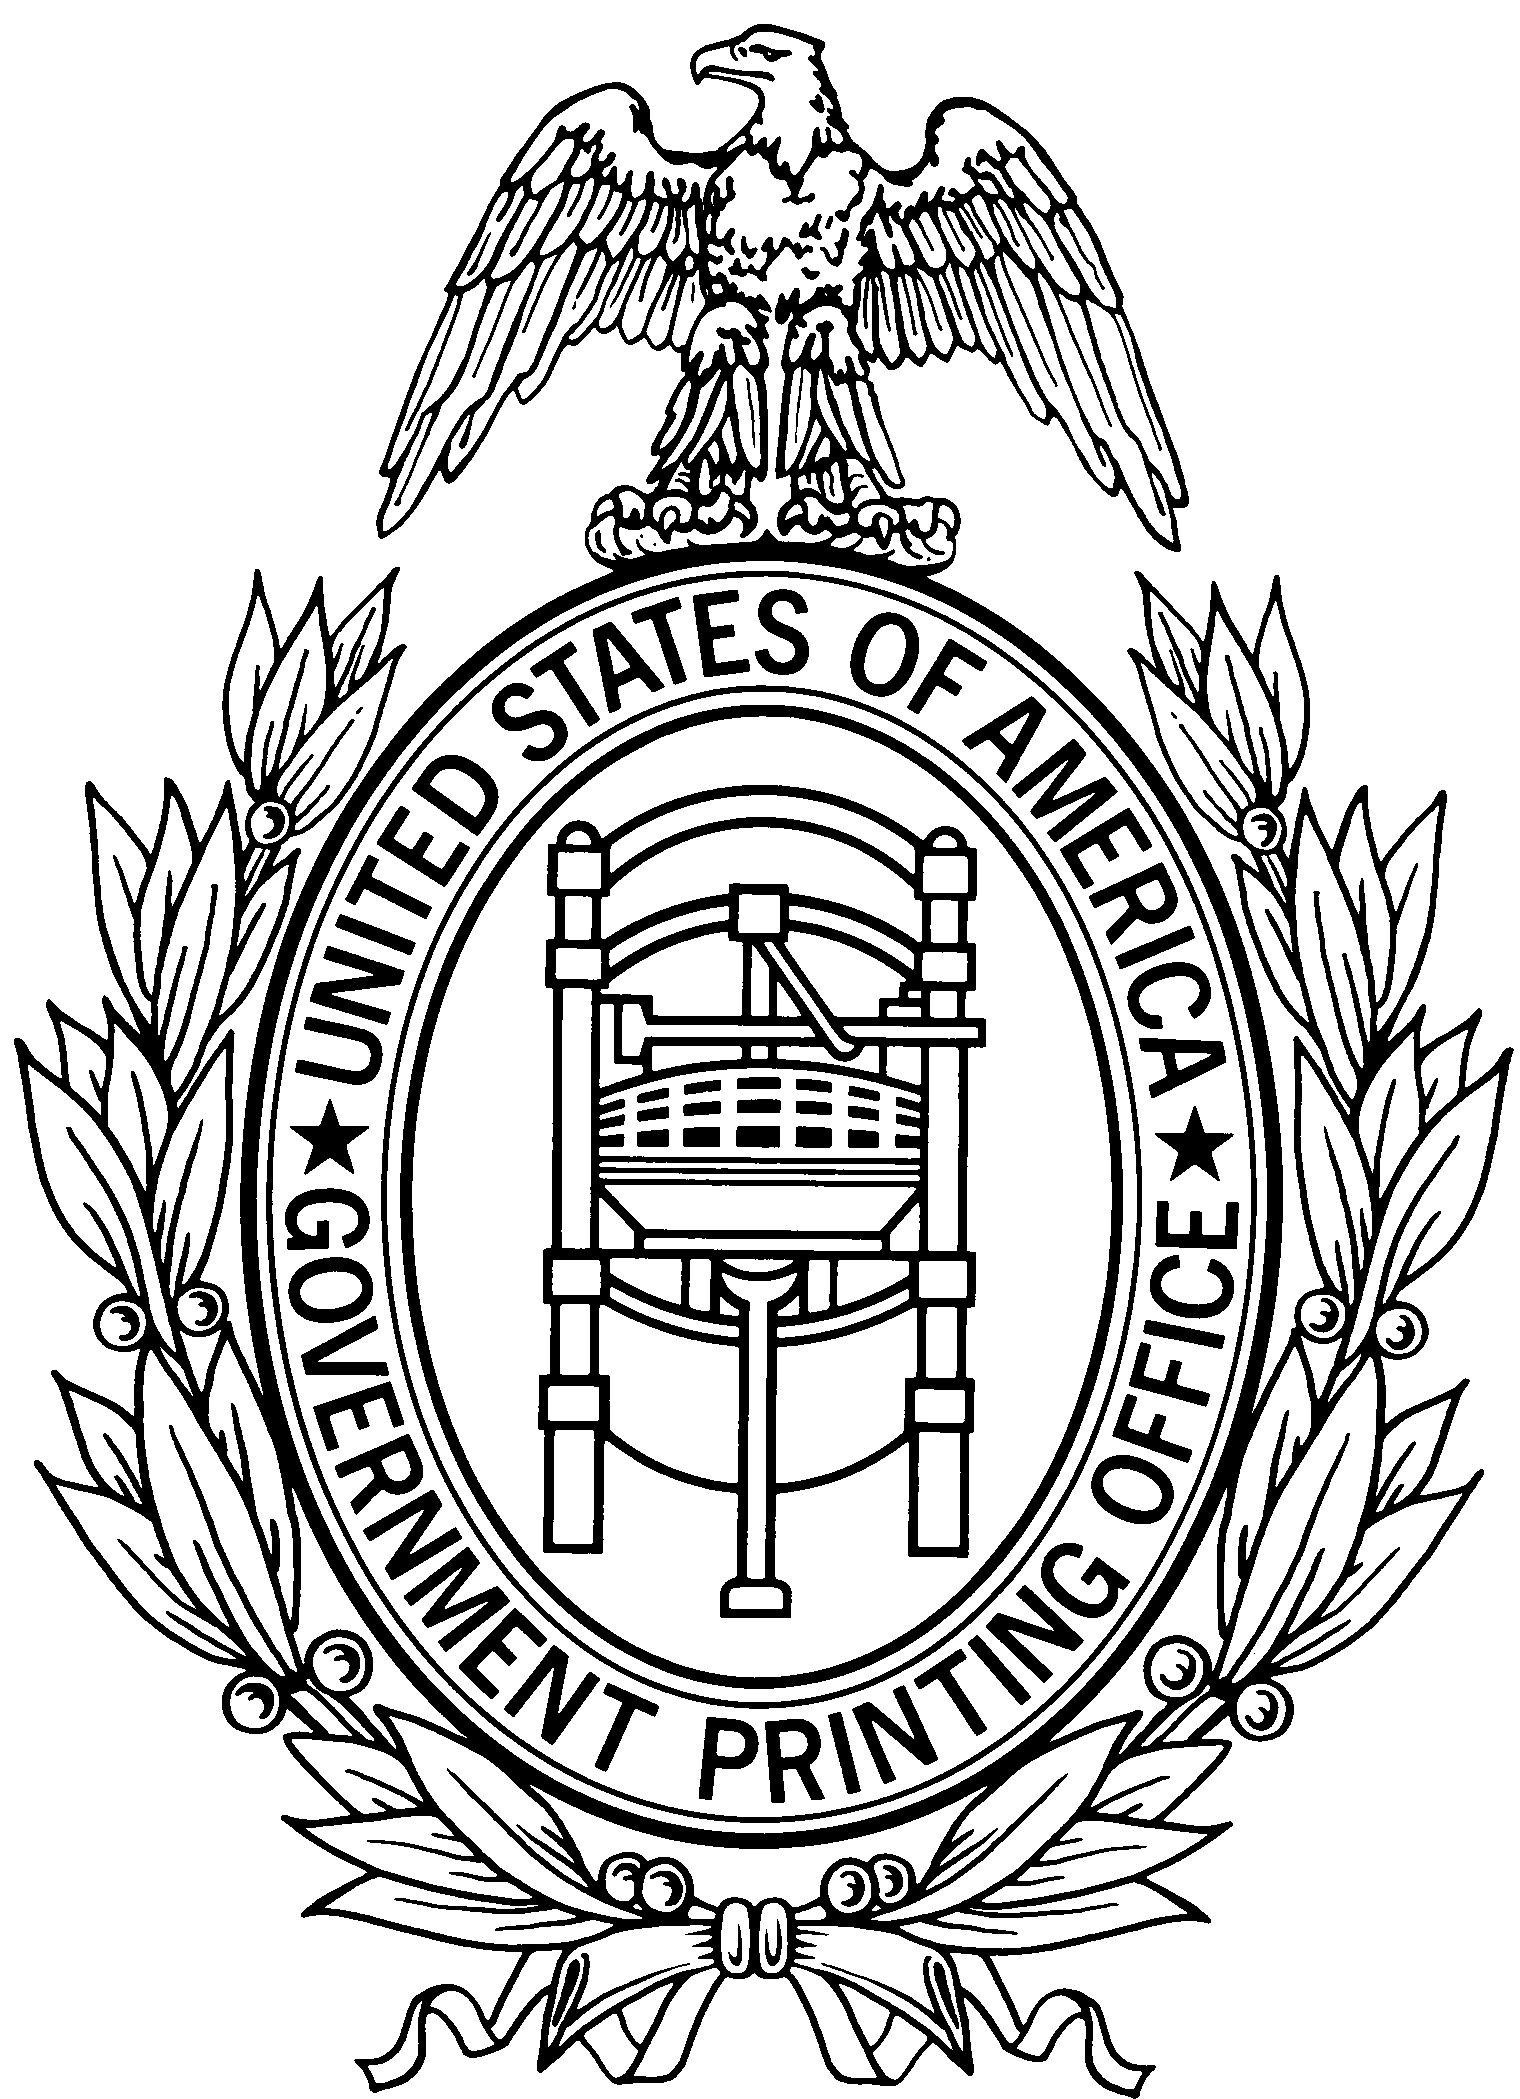 GPO seal